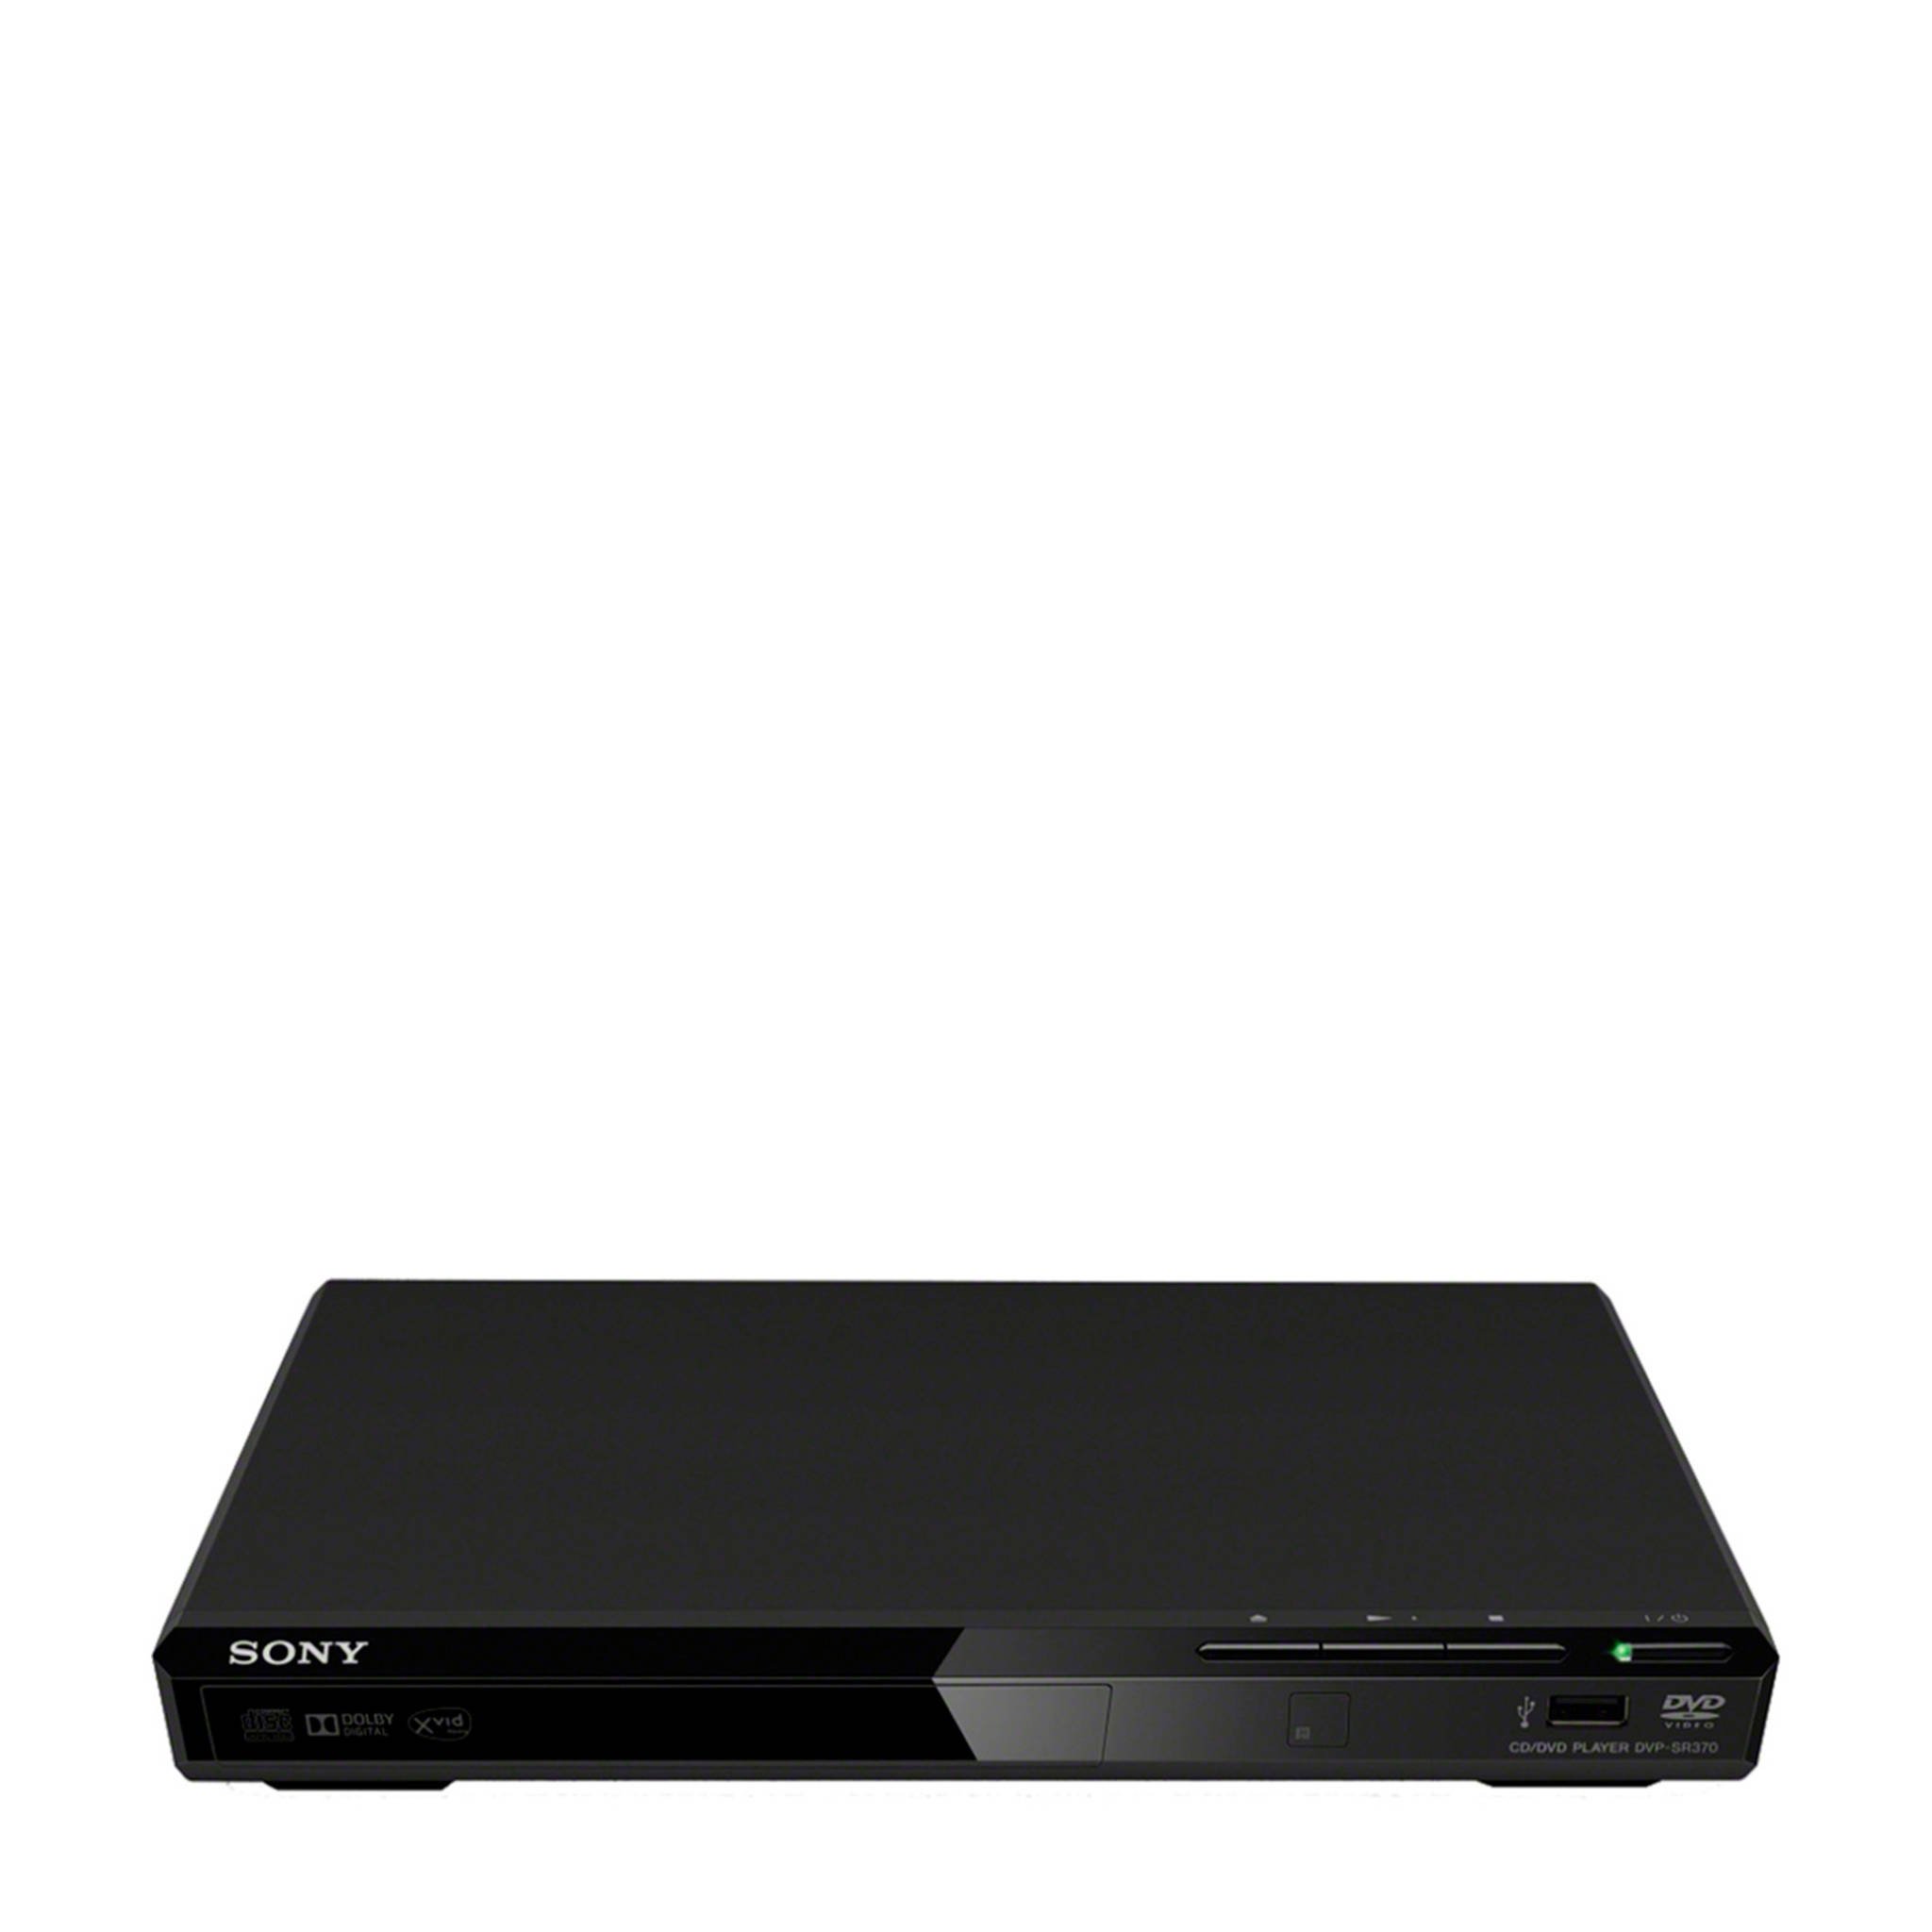 Sony DVPSR370 DVD speler wehkamp